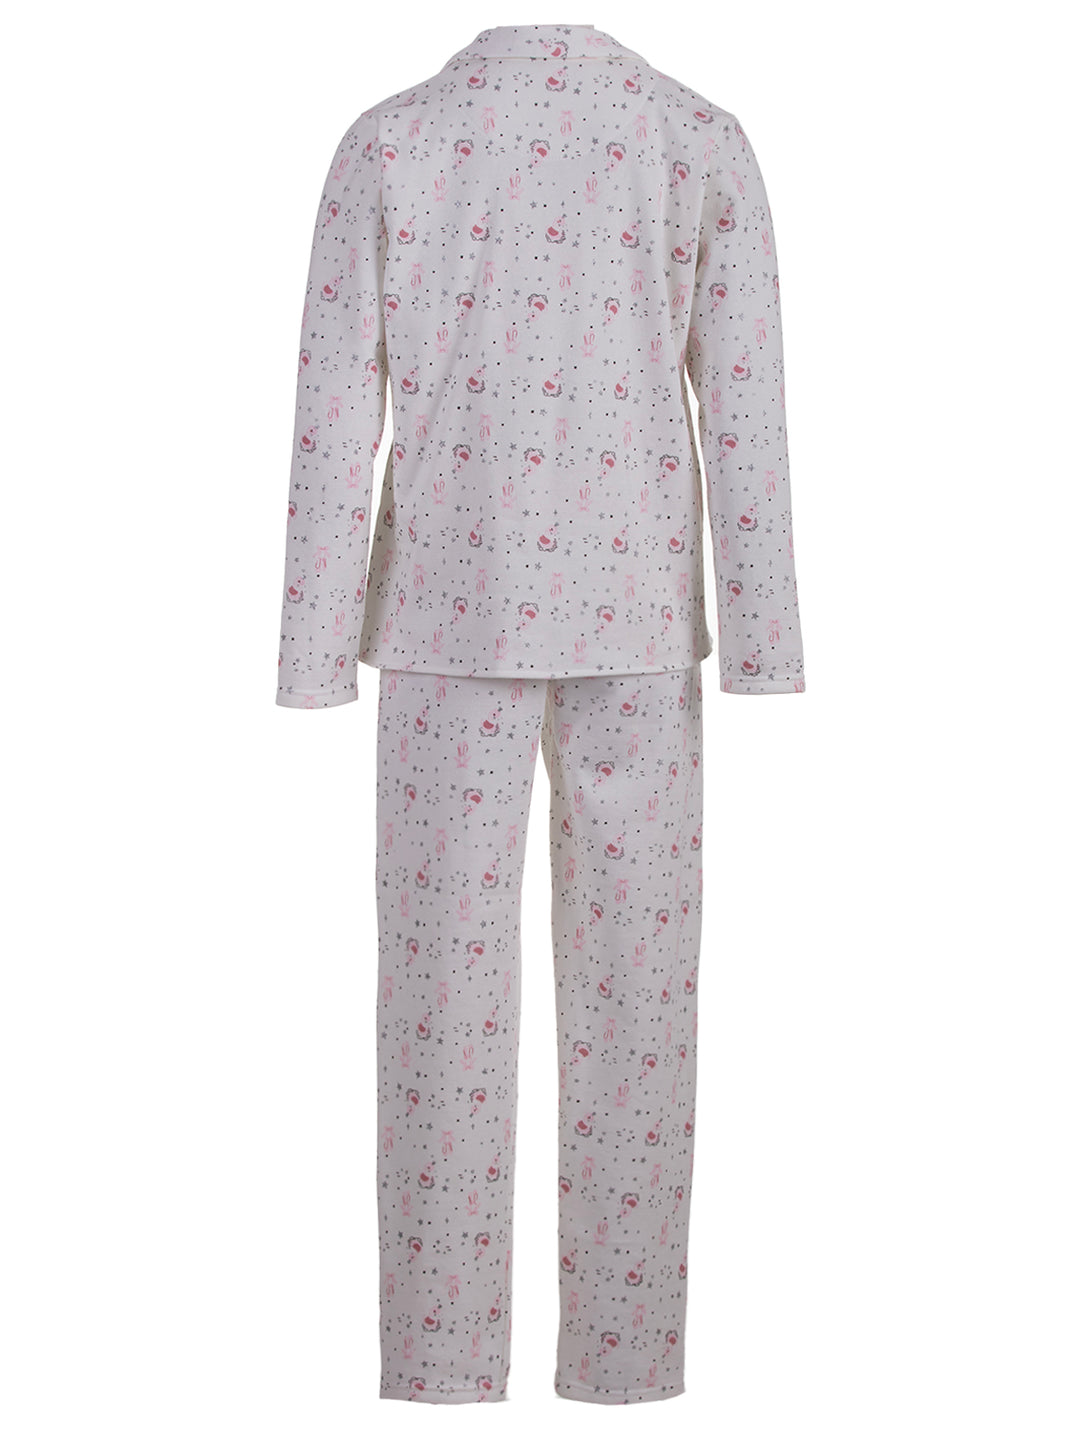 Pyjama Set Thermo - Schwan Schleife